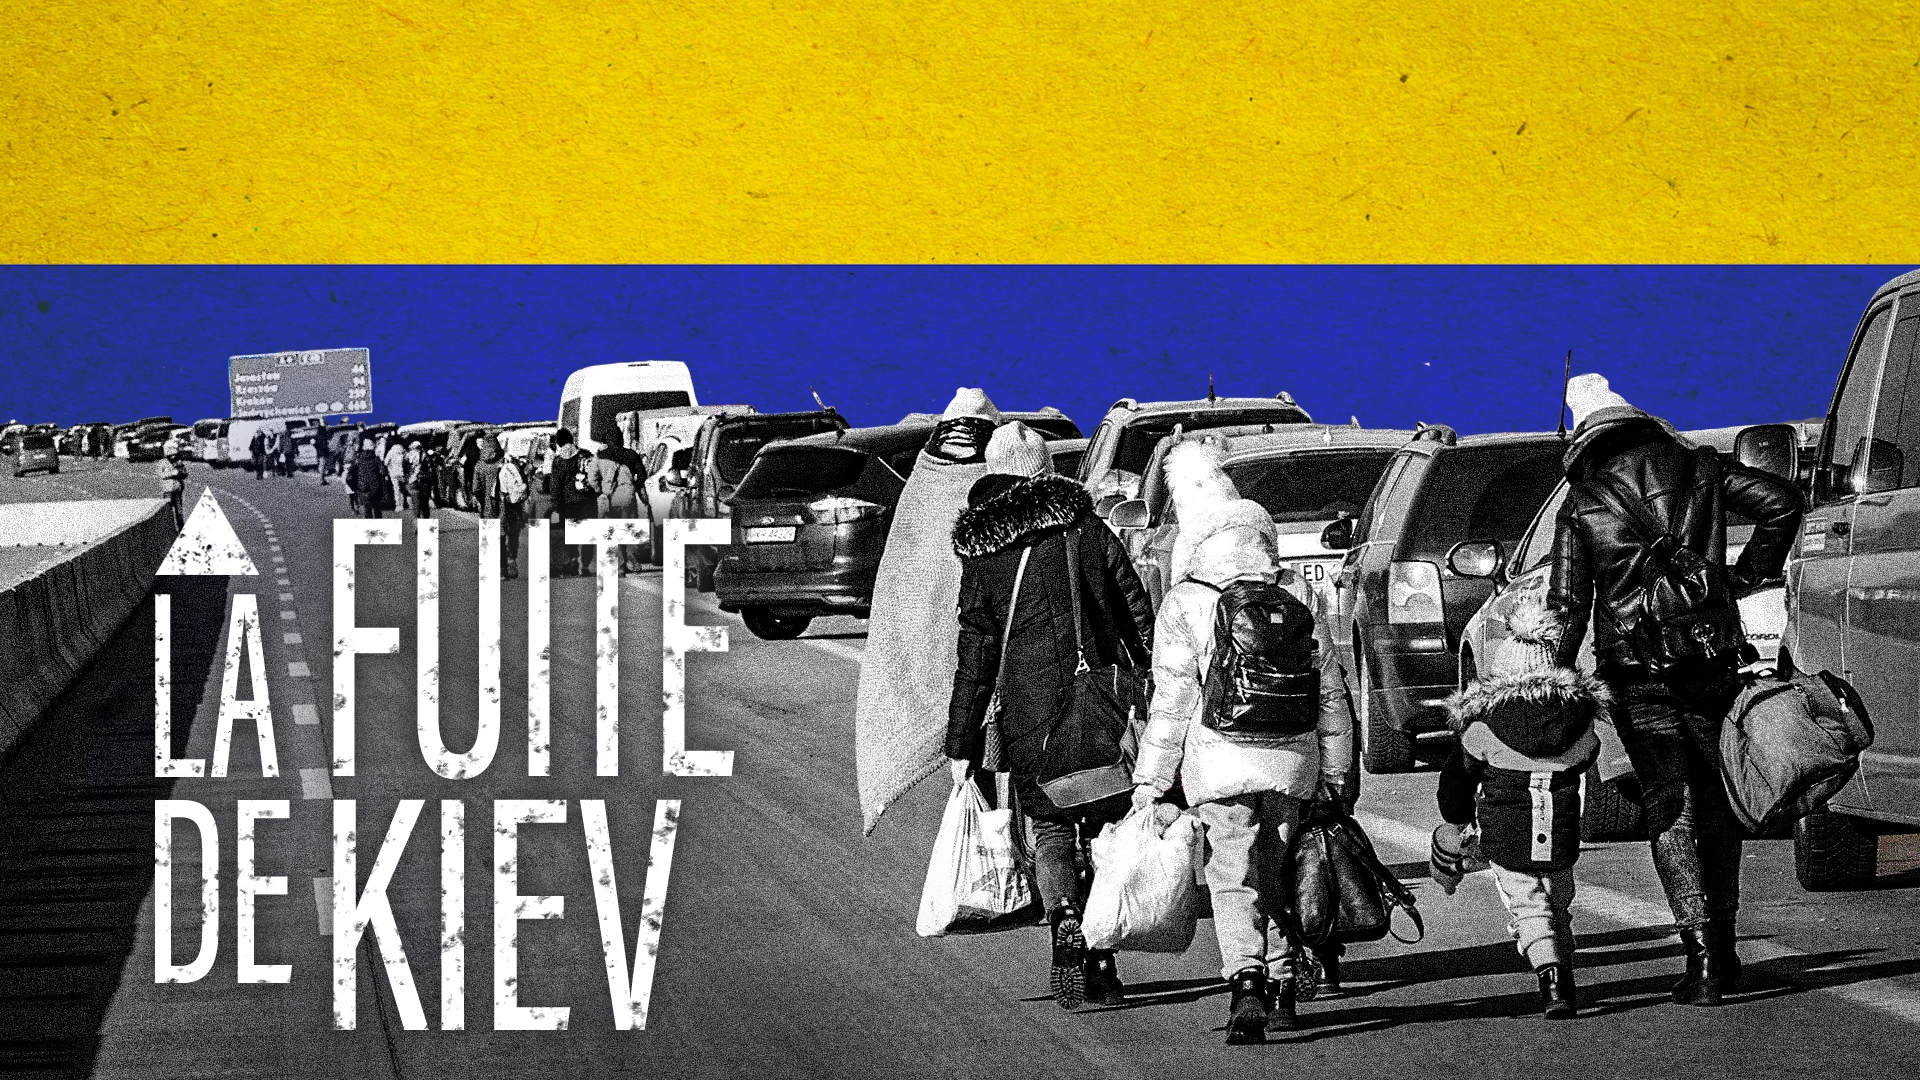 La fuite de Kiev